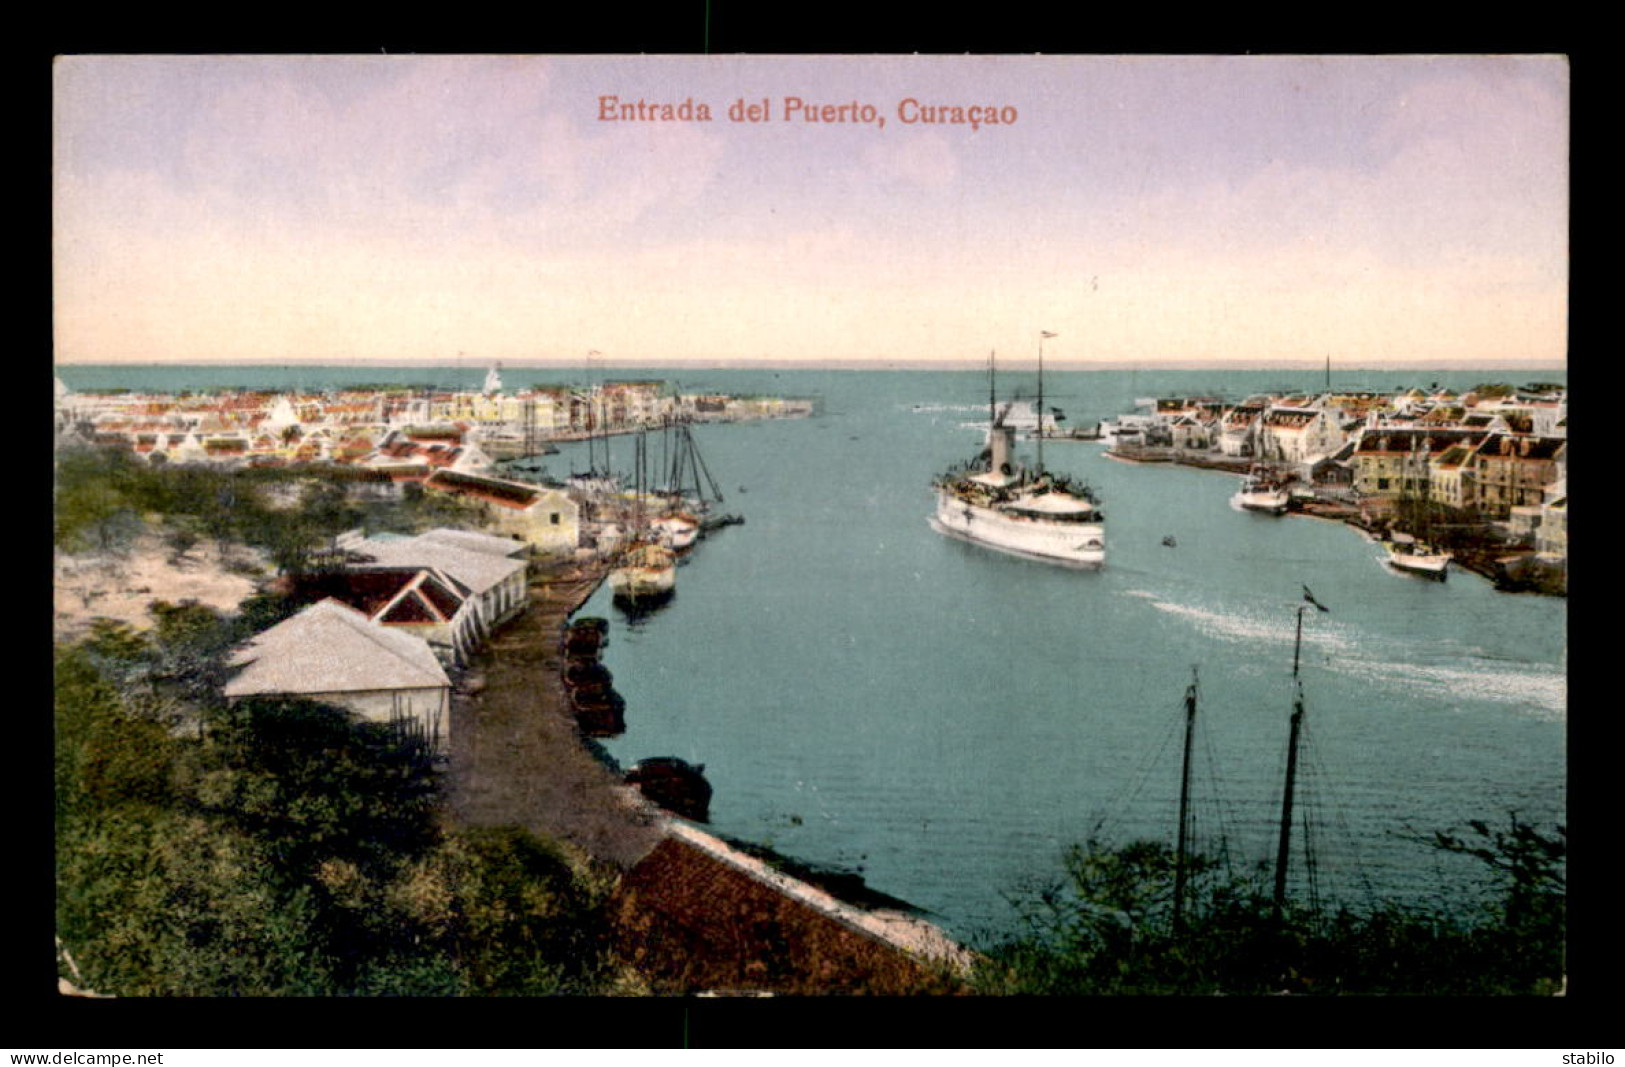 CURACAO - ENTRADA DEL PUERTO - Curaçao